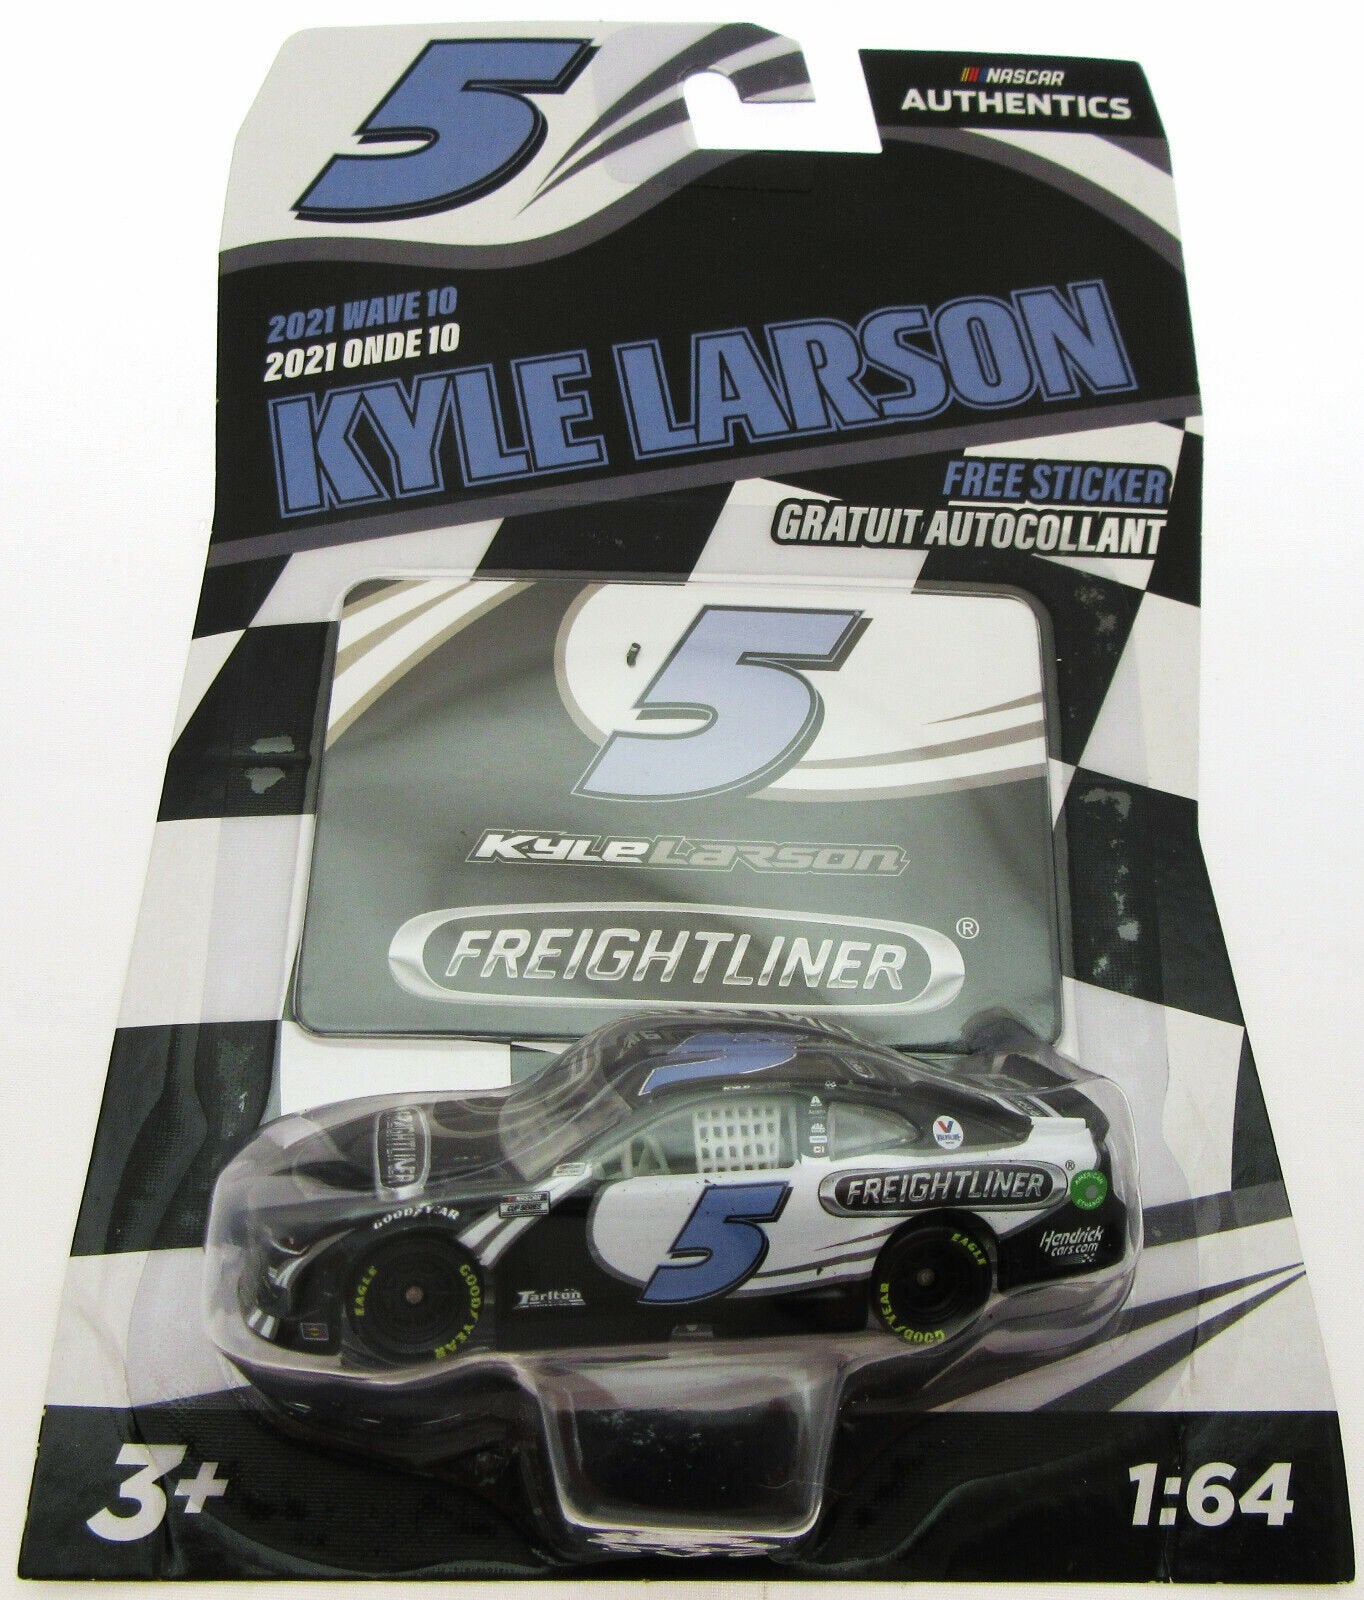 Freightliner Kyle Larson 5 ~ NASCAR Authentics ~ Die Cast Car 1:64 Scale